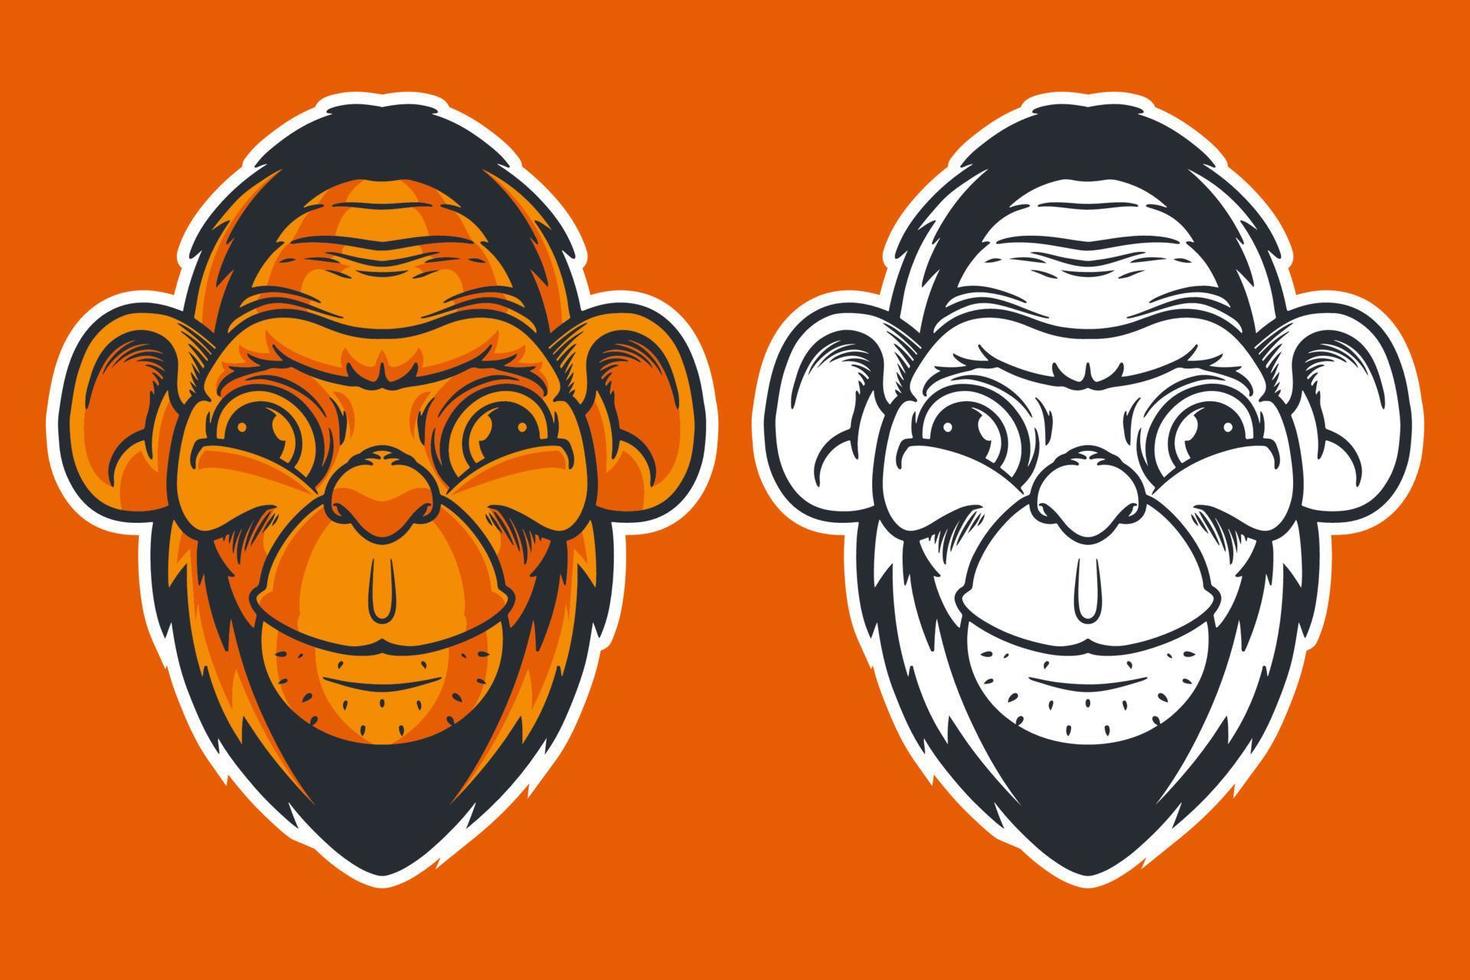 monkey head mascot vector illustration cartoon style